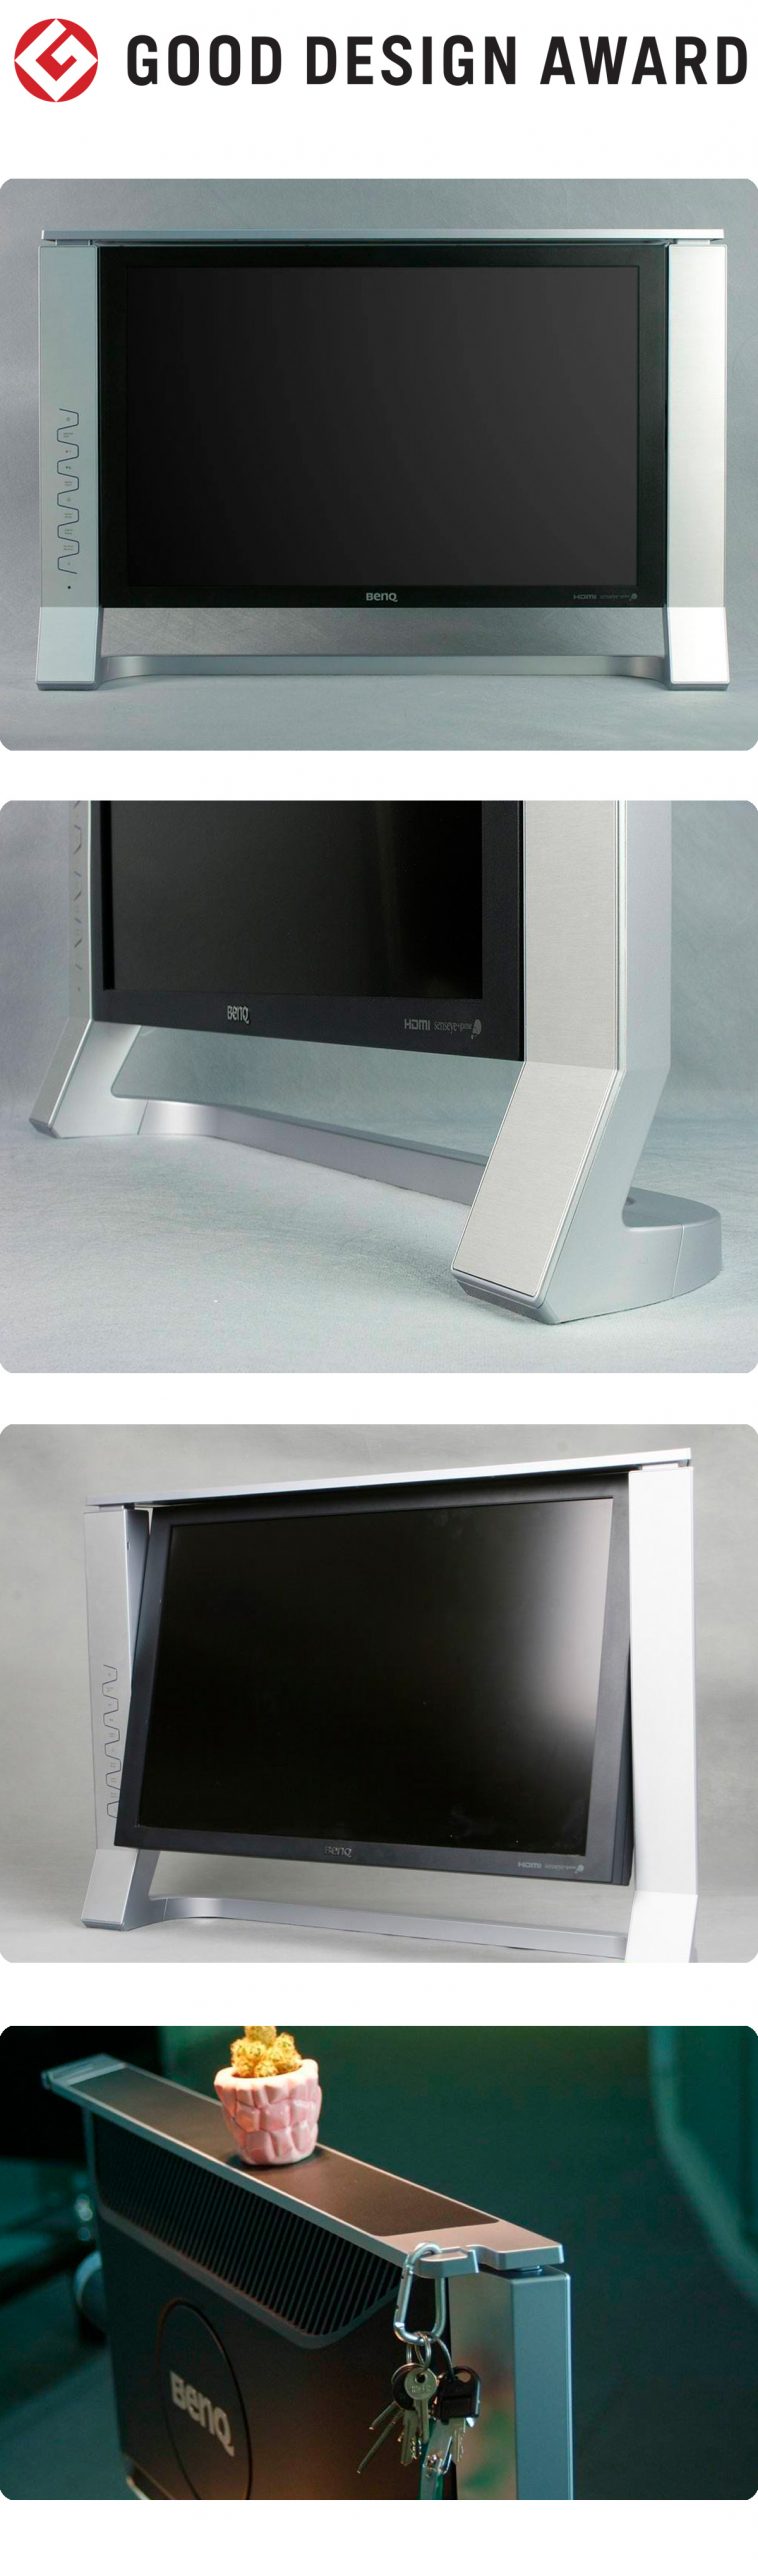 【日本】明基BenQ液晶显示器FP241VW获颁2007年度G-Mark设计大奖（GOOD DESIGN AWARD 2007）